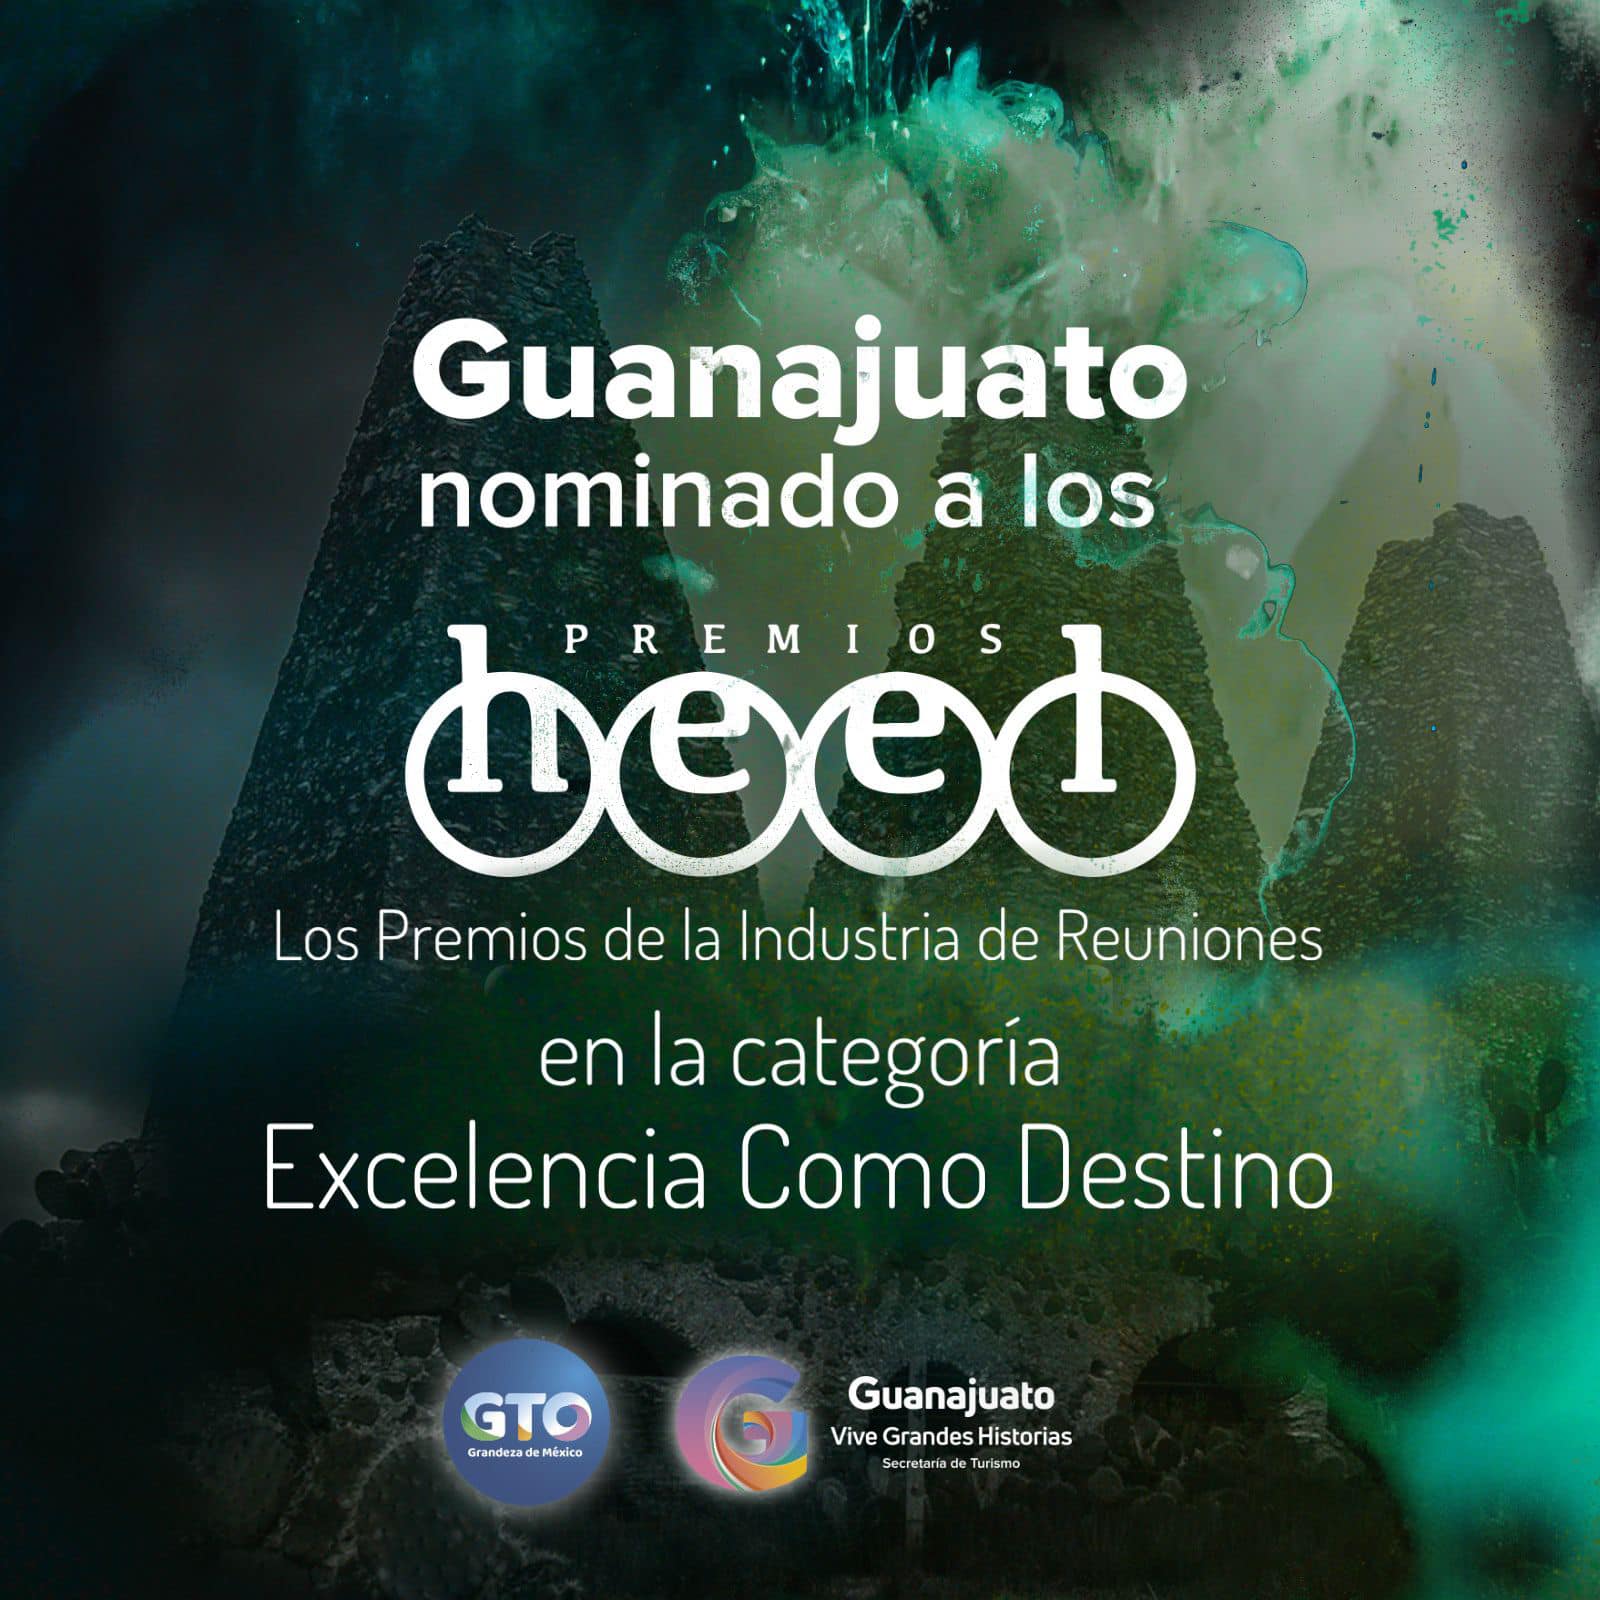 Nominan al Estado de Guanajuato en los Premios Heel 2023